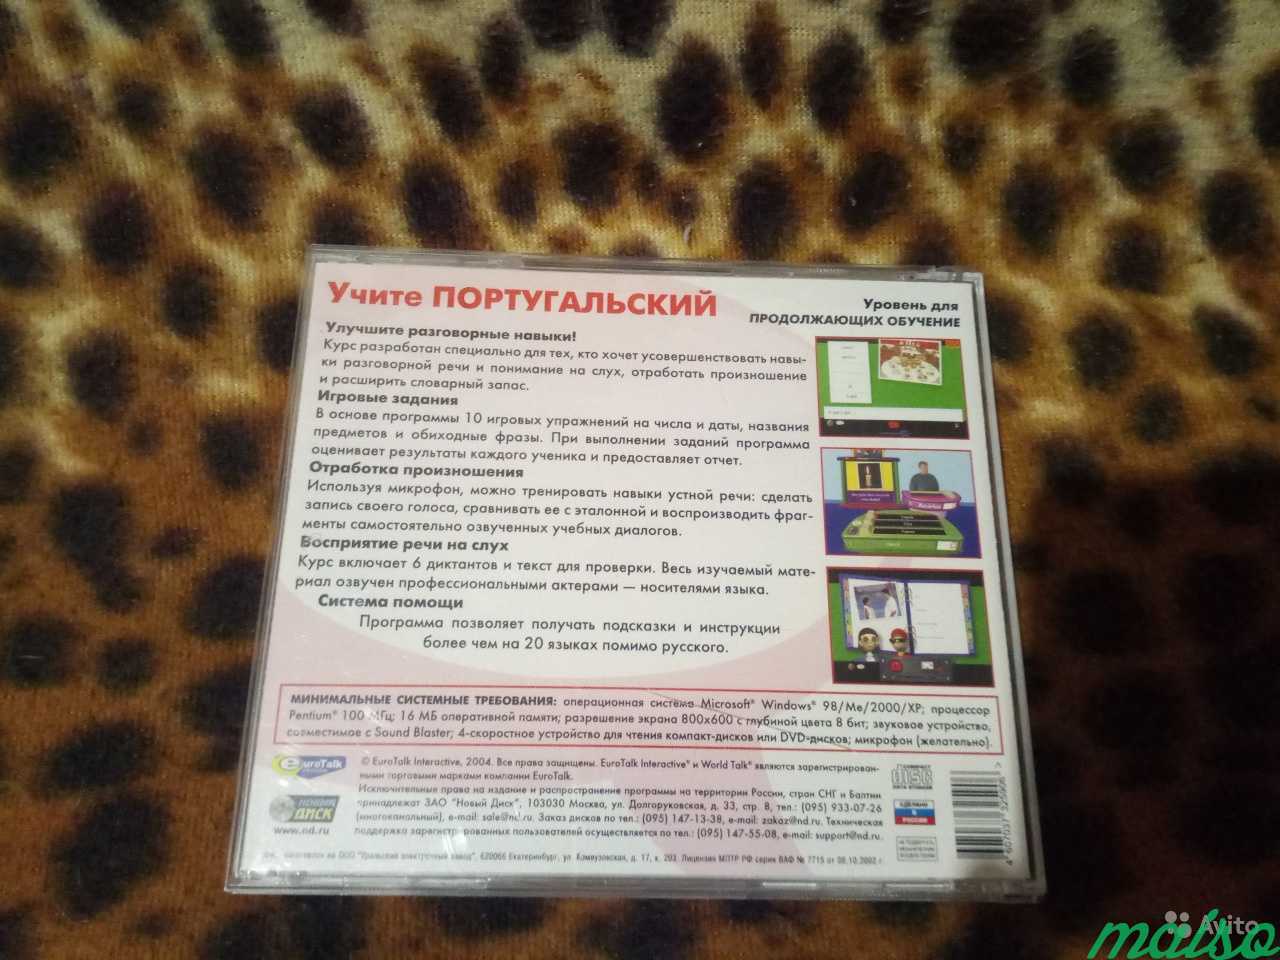 CD-диски самоучитель португальского языка в Санкт-Петербурге. Фото 3